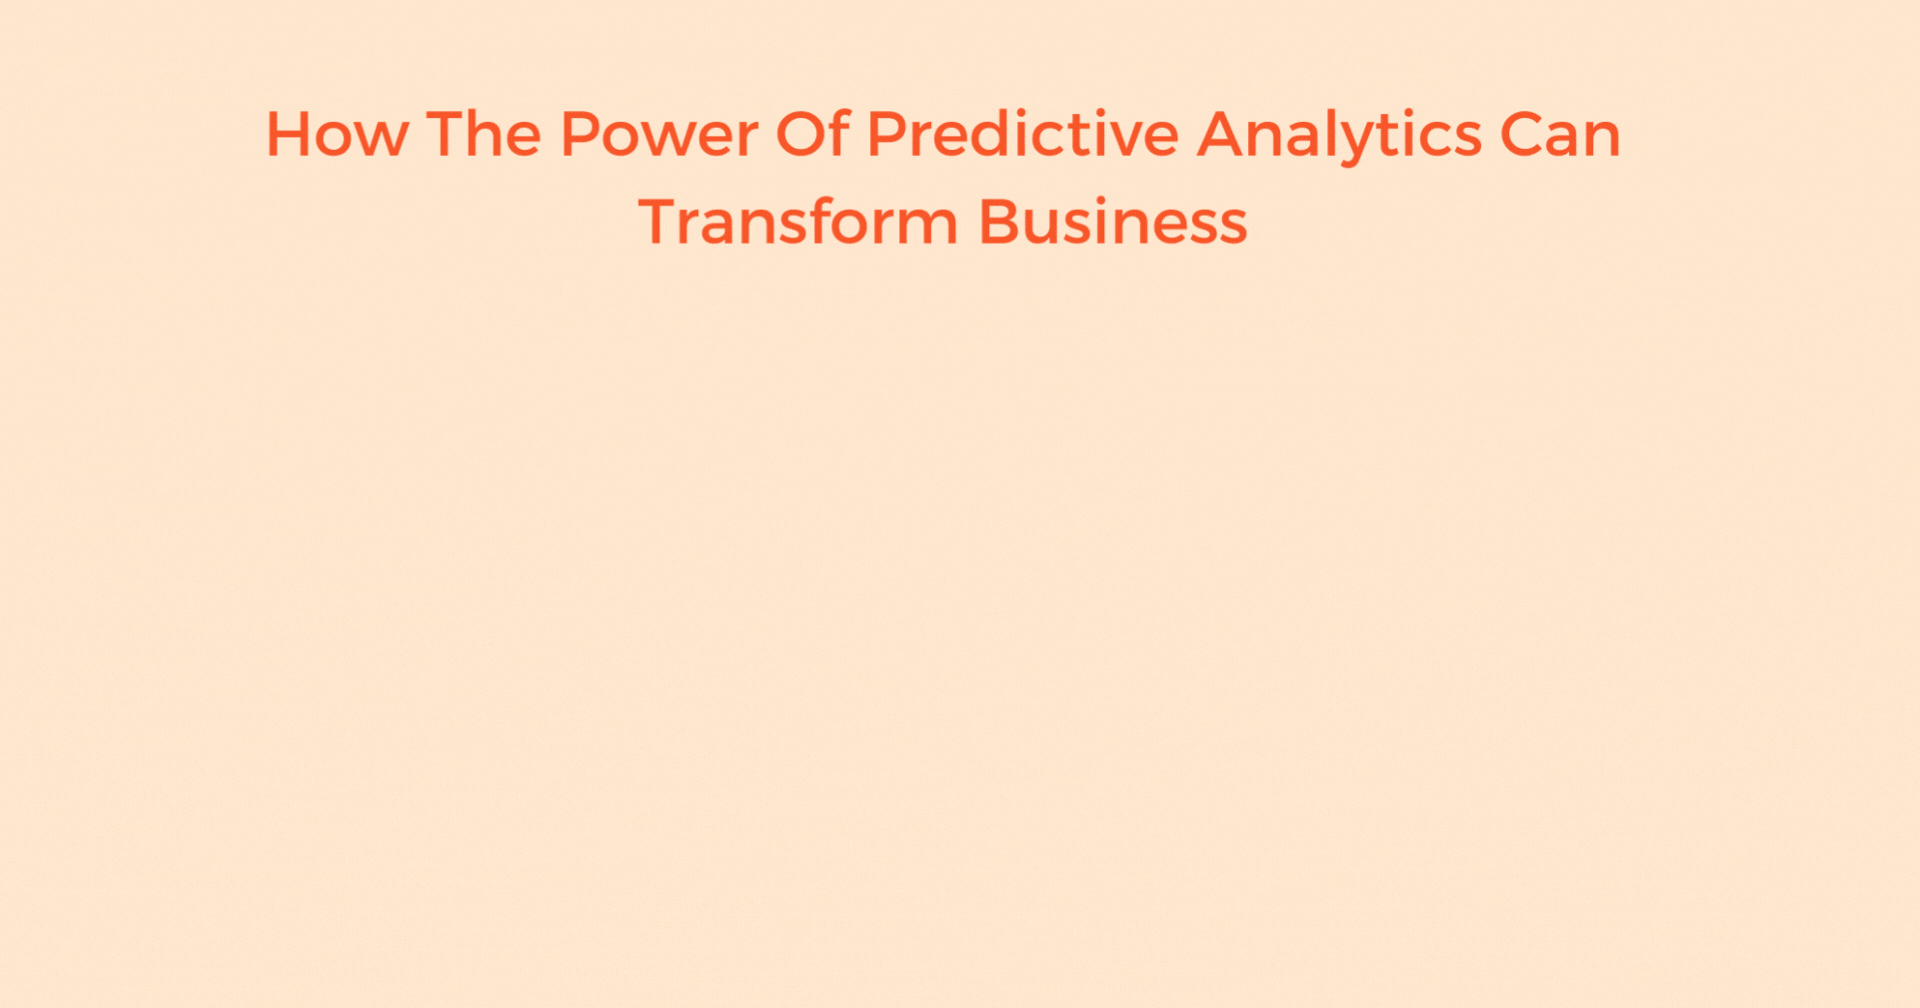 Power of Predictive Analytics